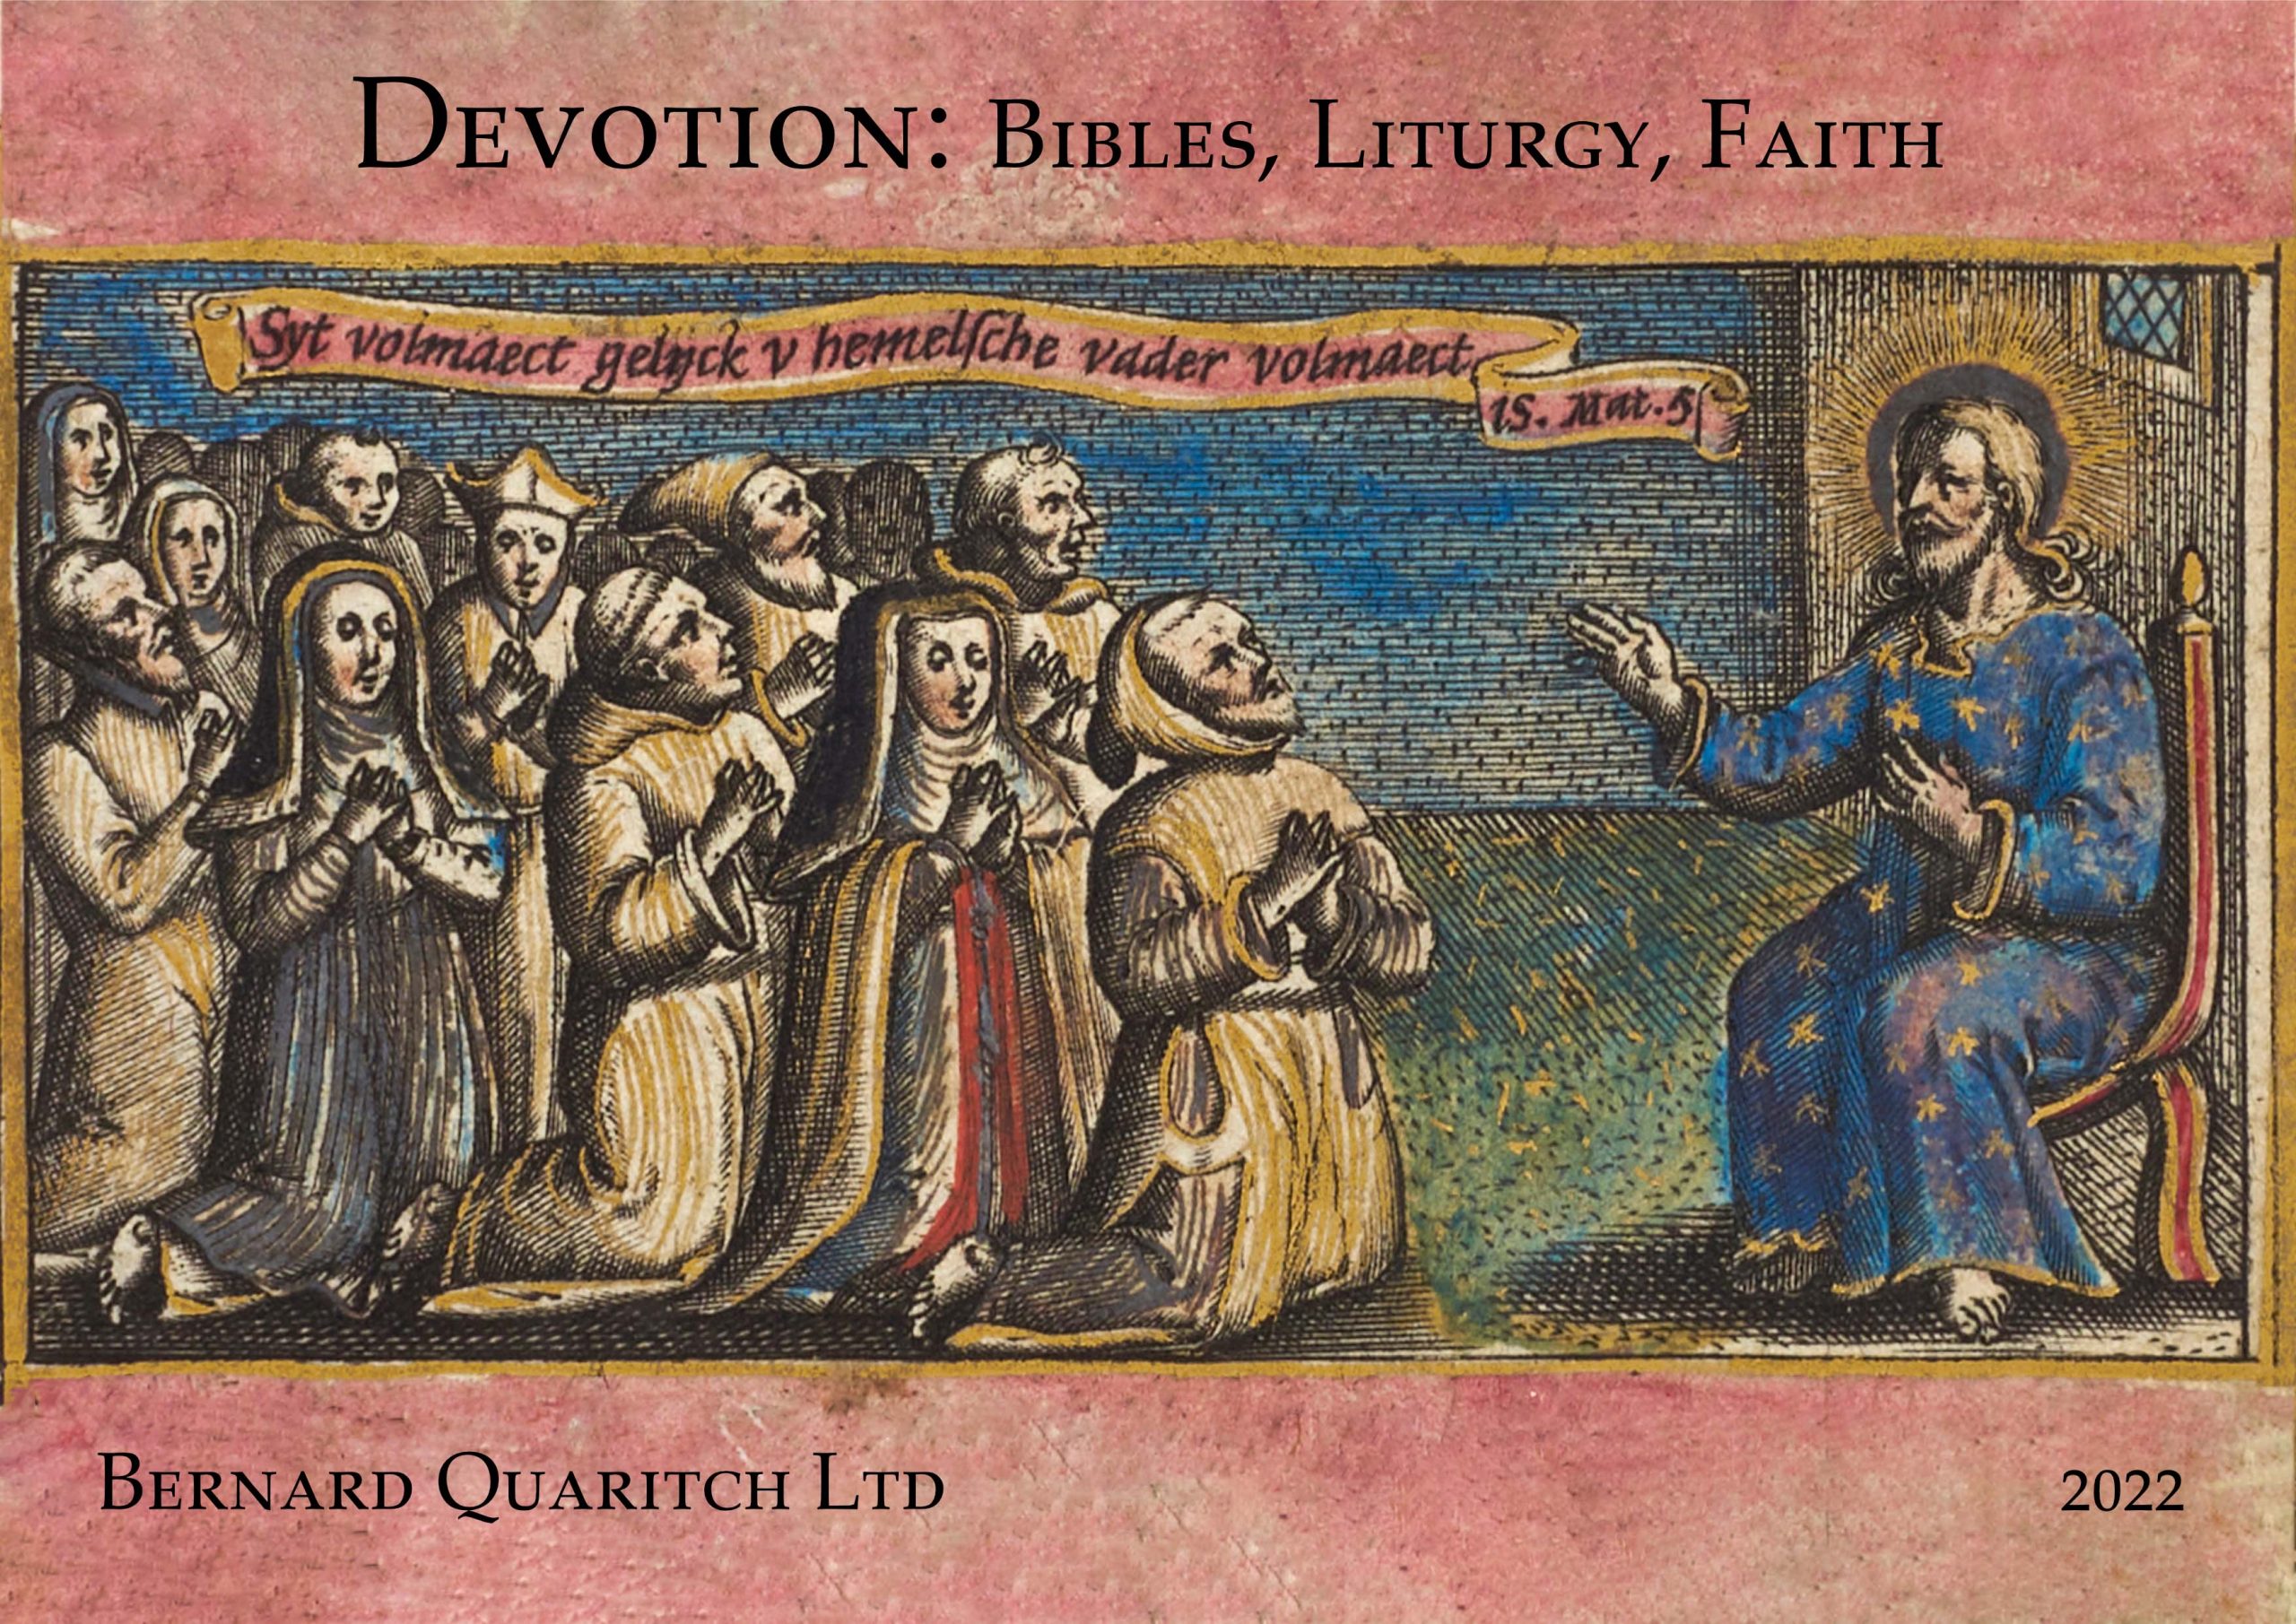 Devotion: Bibles, Liturgy, Faith